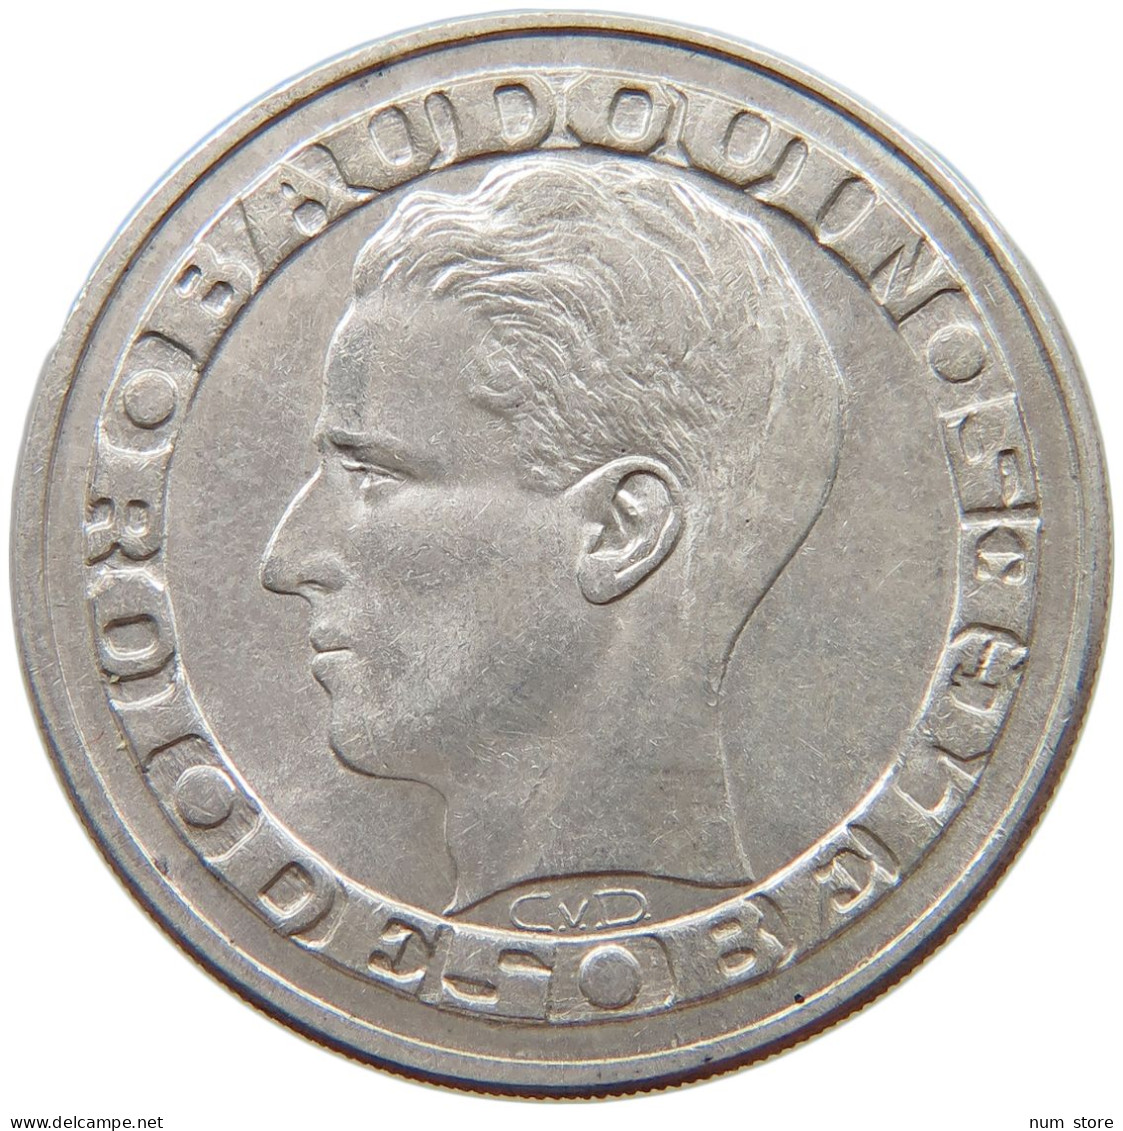 BELGIUM 50 FRANCS 1958 BADOUIN I. 1951-1993 #c049 0285 - 50 Francs